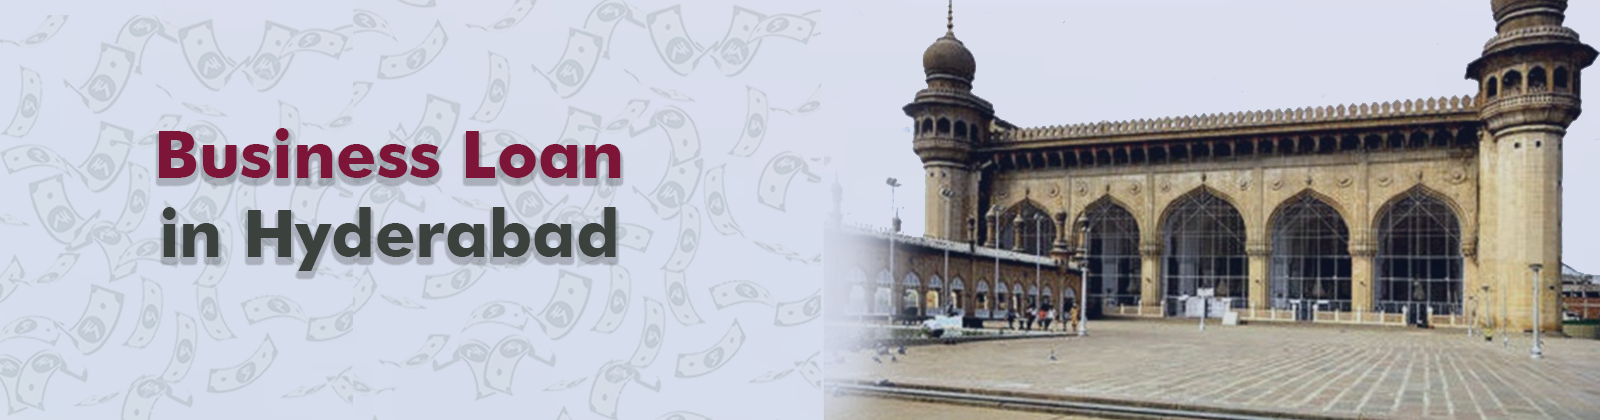 Business Loan in Hyderabad